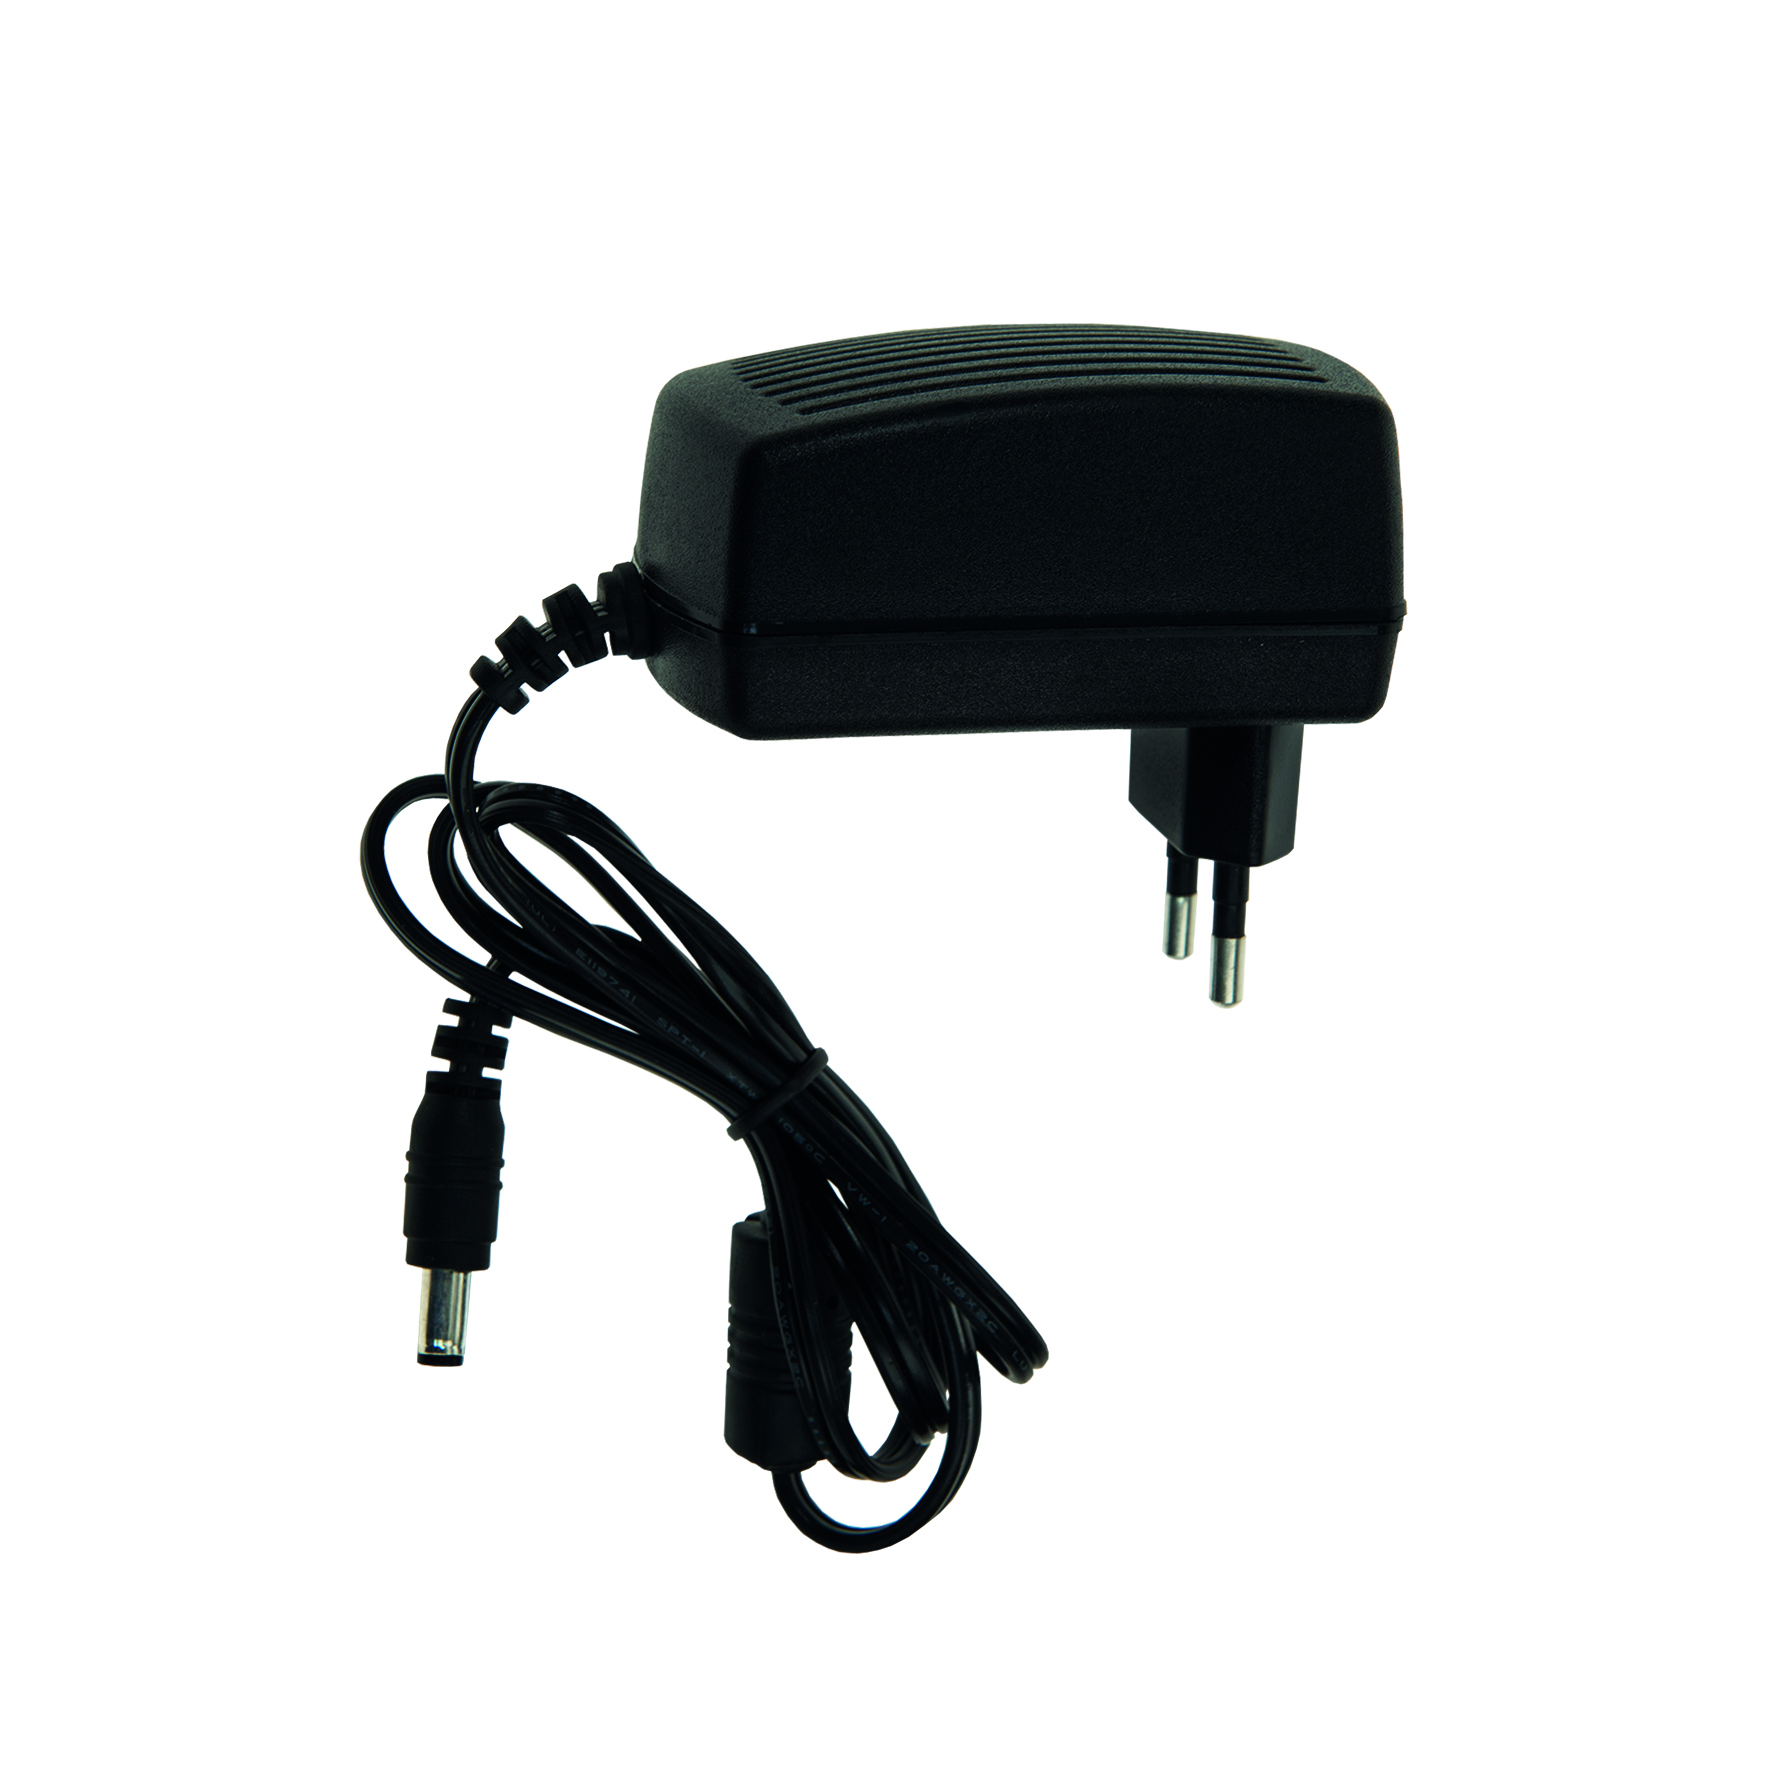 Adaptor Portable Floodlight 20W/30W